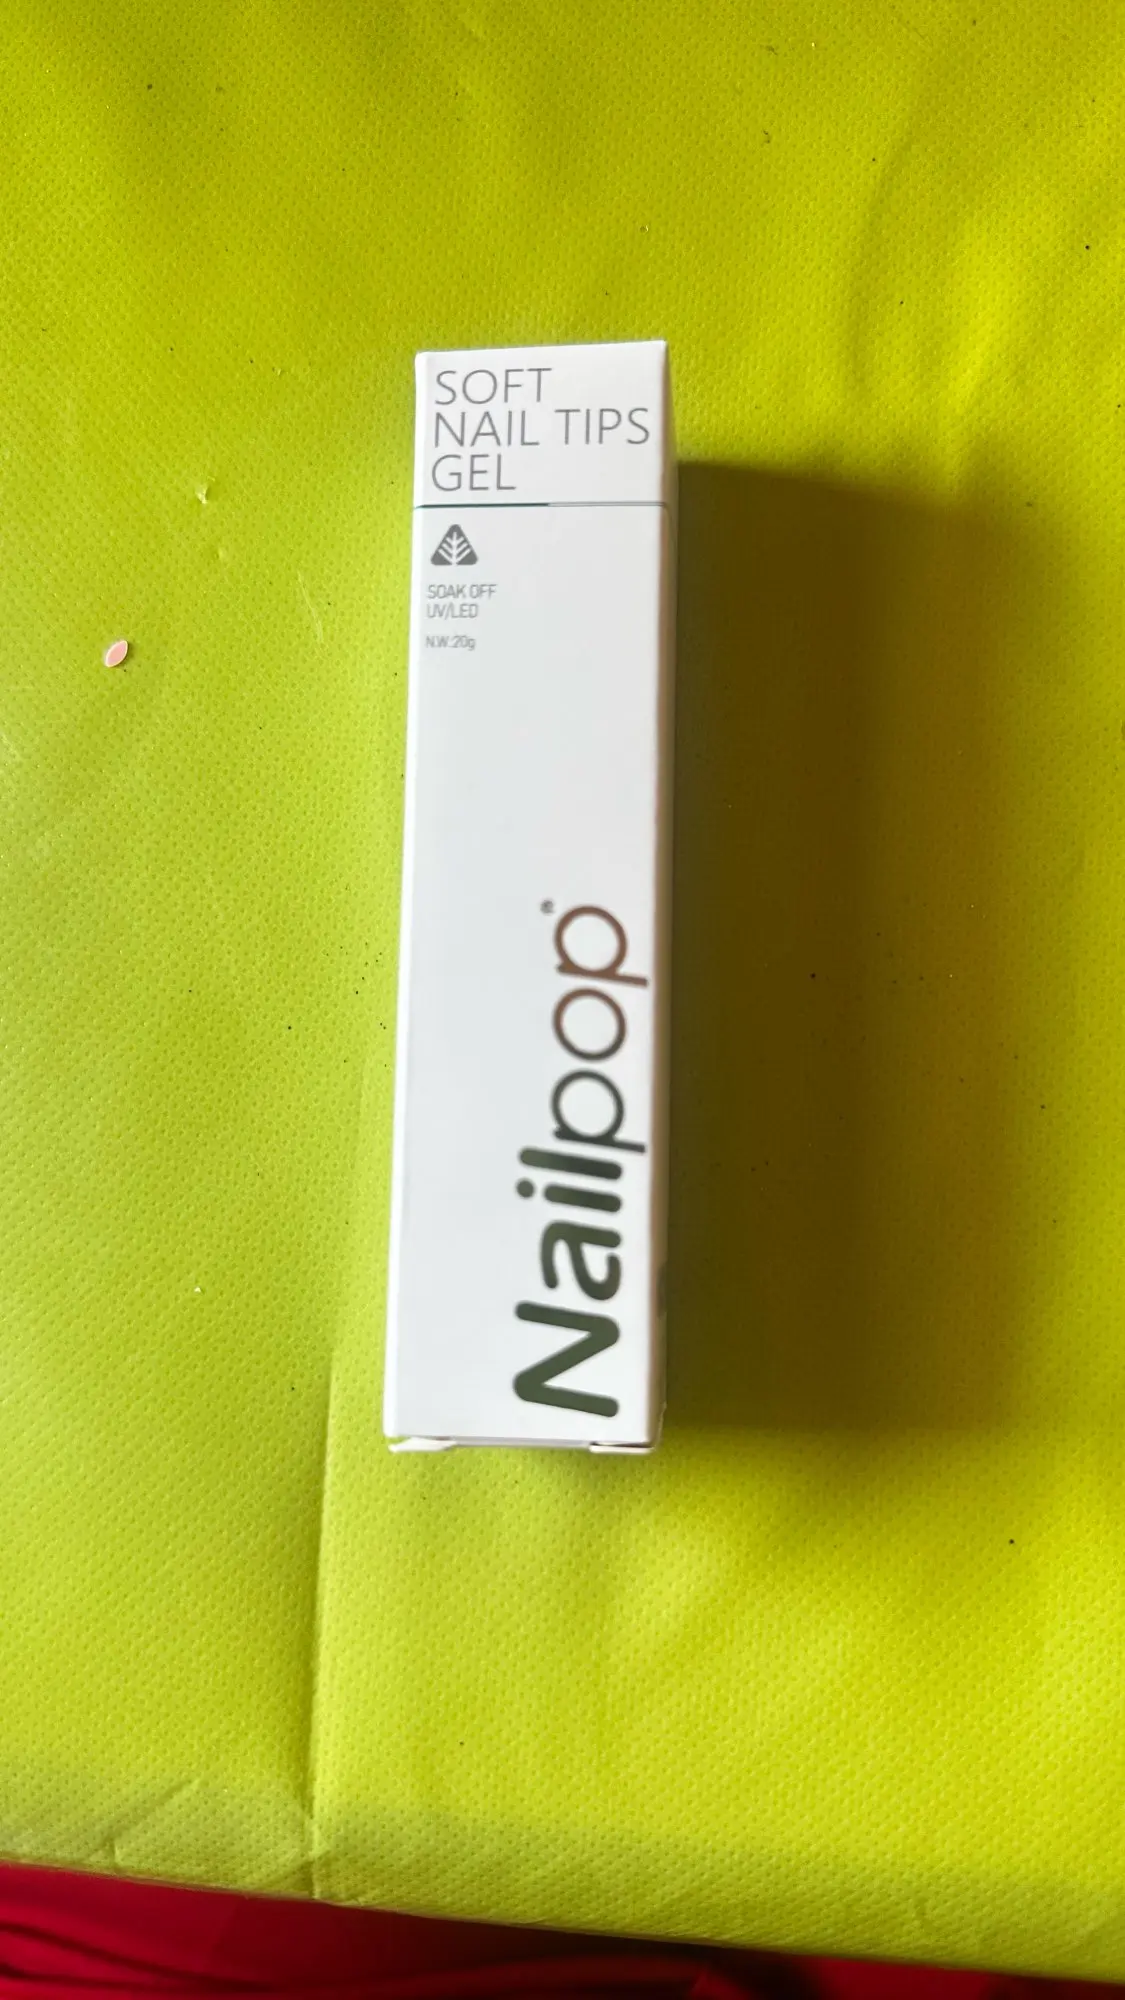 Nailpop Pro Soft Nail Tips Gellim 20g självhäftande falska naglar Långvarig blötläggning UV Gel Nagellack Manikyrprodukter för naglar photo review